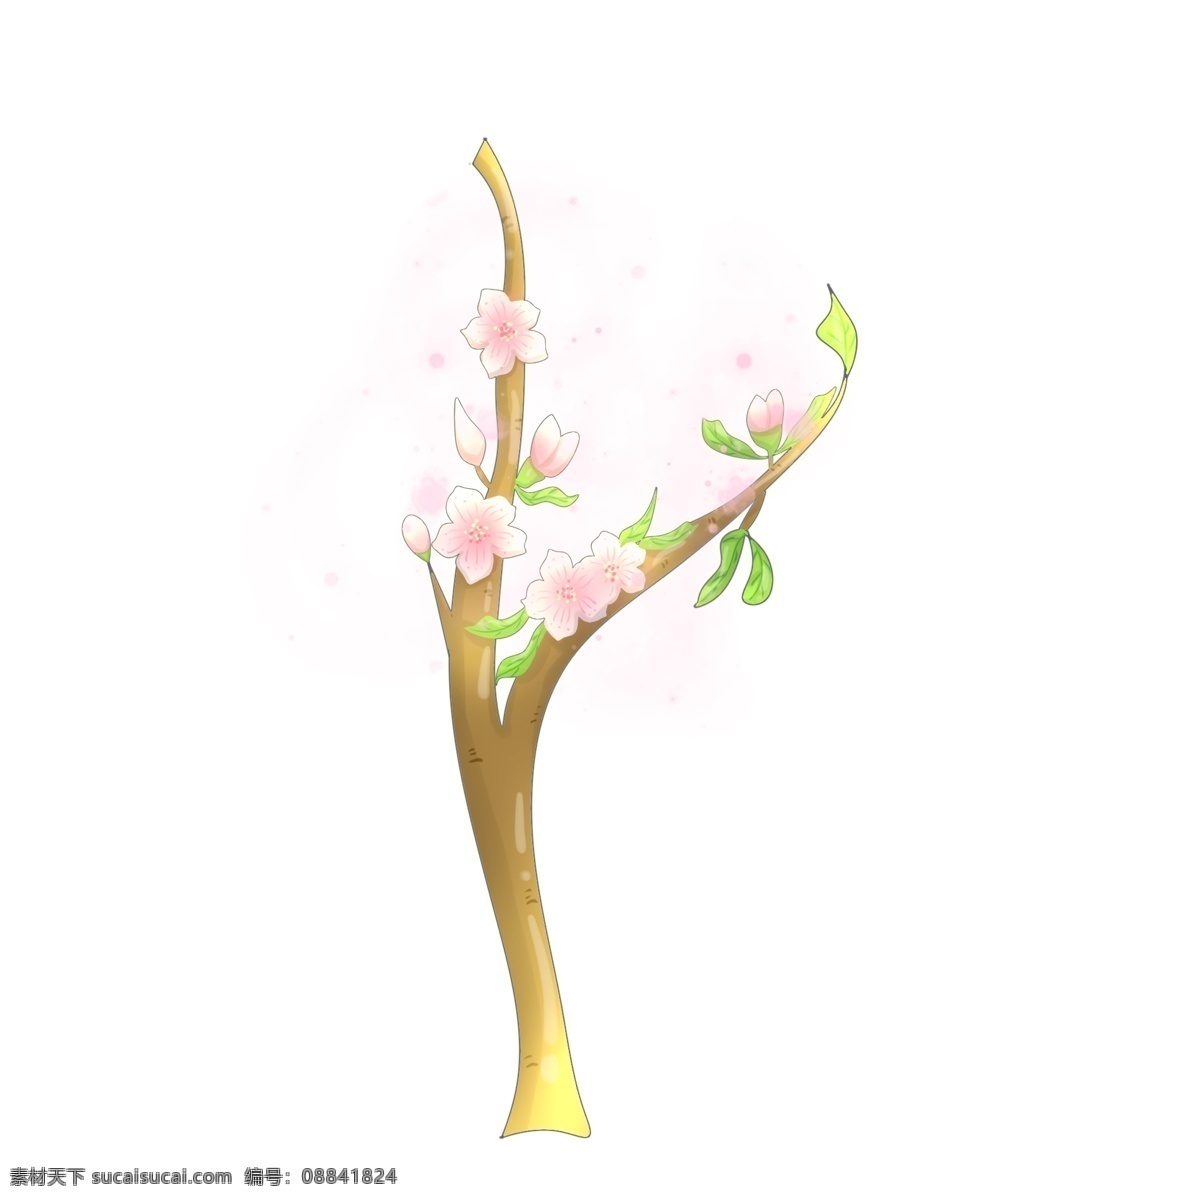 卡通 桃花 装饰 插画 卡通桃花 粉色的桃花 漂亮的桃花 桃花装饰 绿色的叶子 创意桃花 春季桃花